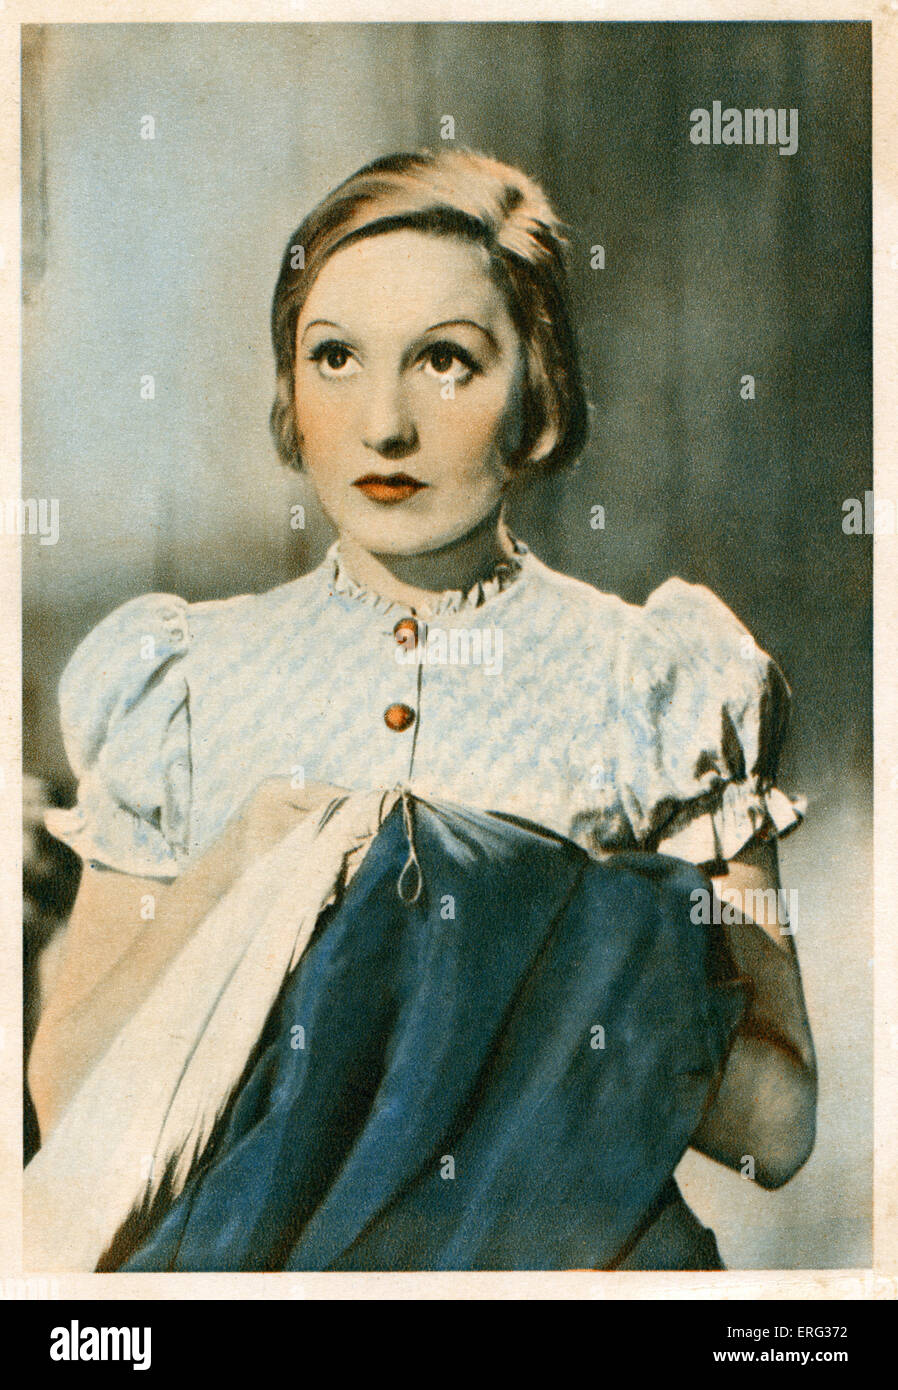 Elisabeth Bergner, actriz Austrian-Ukrainian 22 de agosto de 1897 - 12 de mayo de 1986. Foto de stock